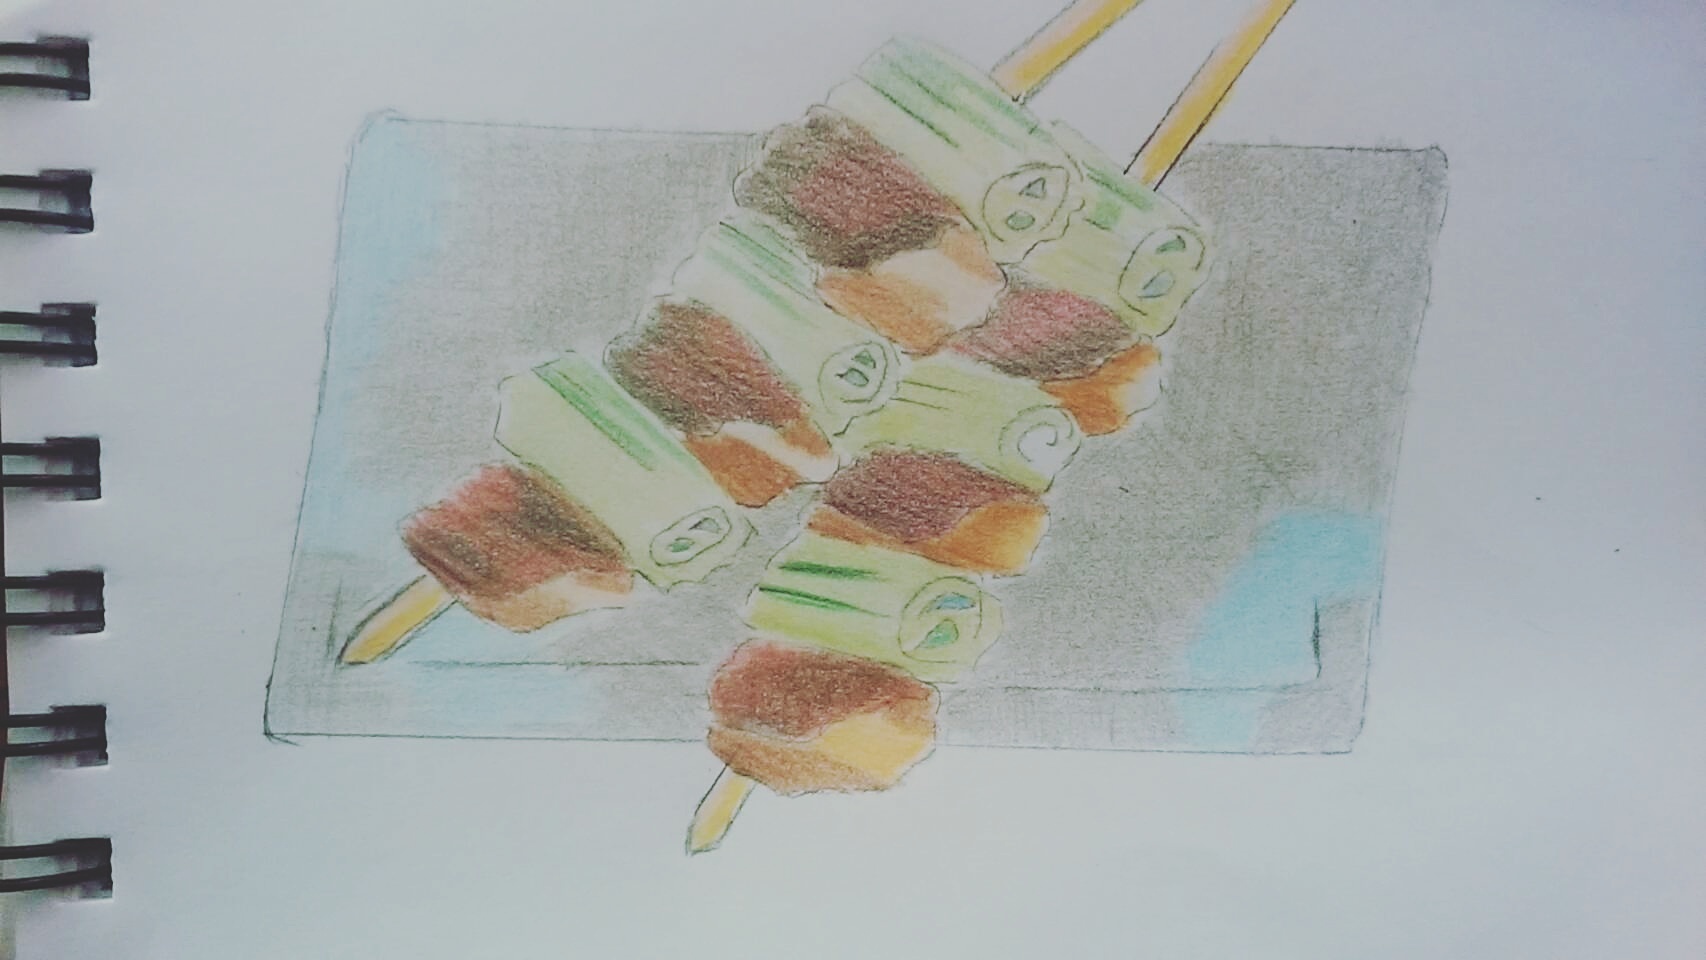 色鉛筆 食べ物スケッチ 焼き鳥 描いてみた Original Image Pastel